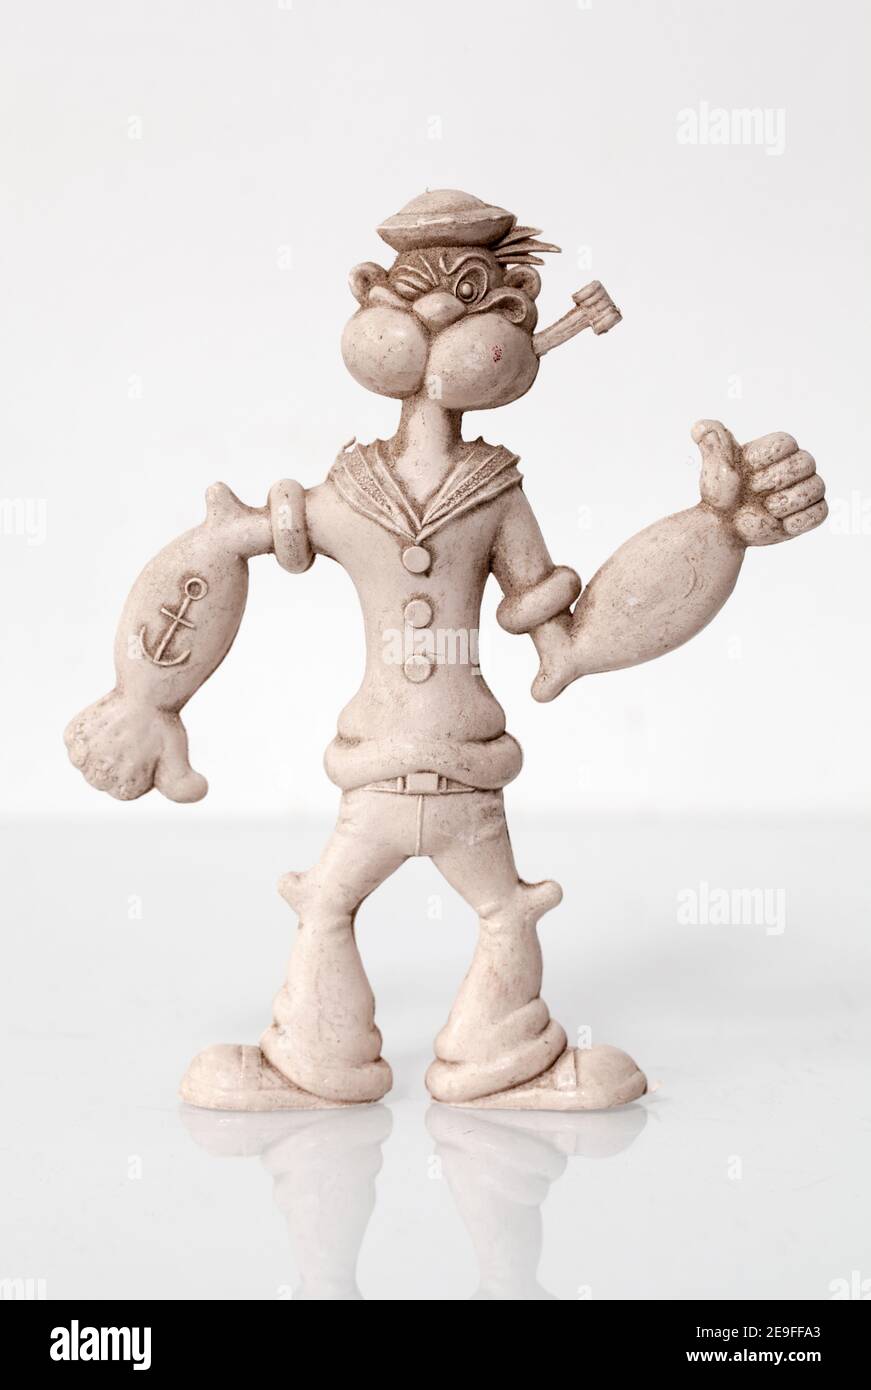 Popeye Toy Model Stock Photo